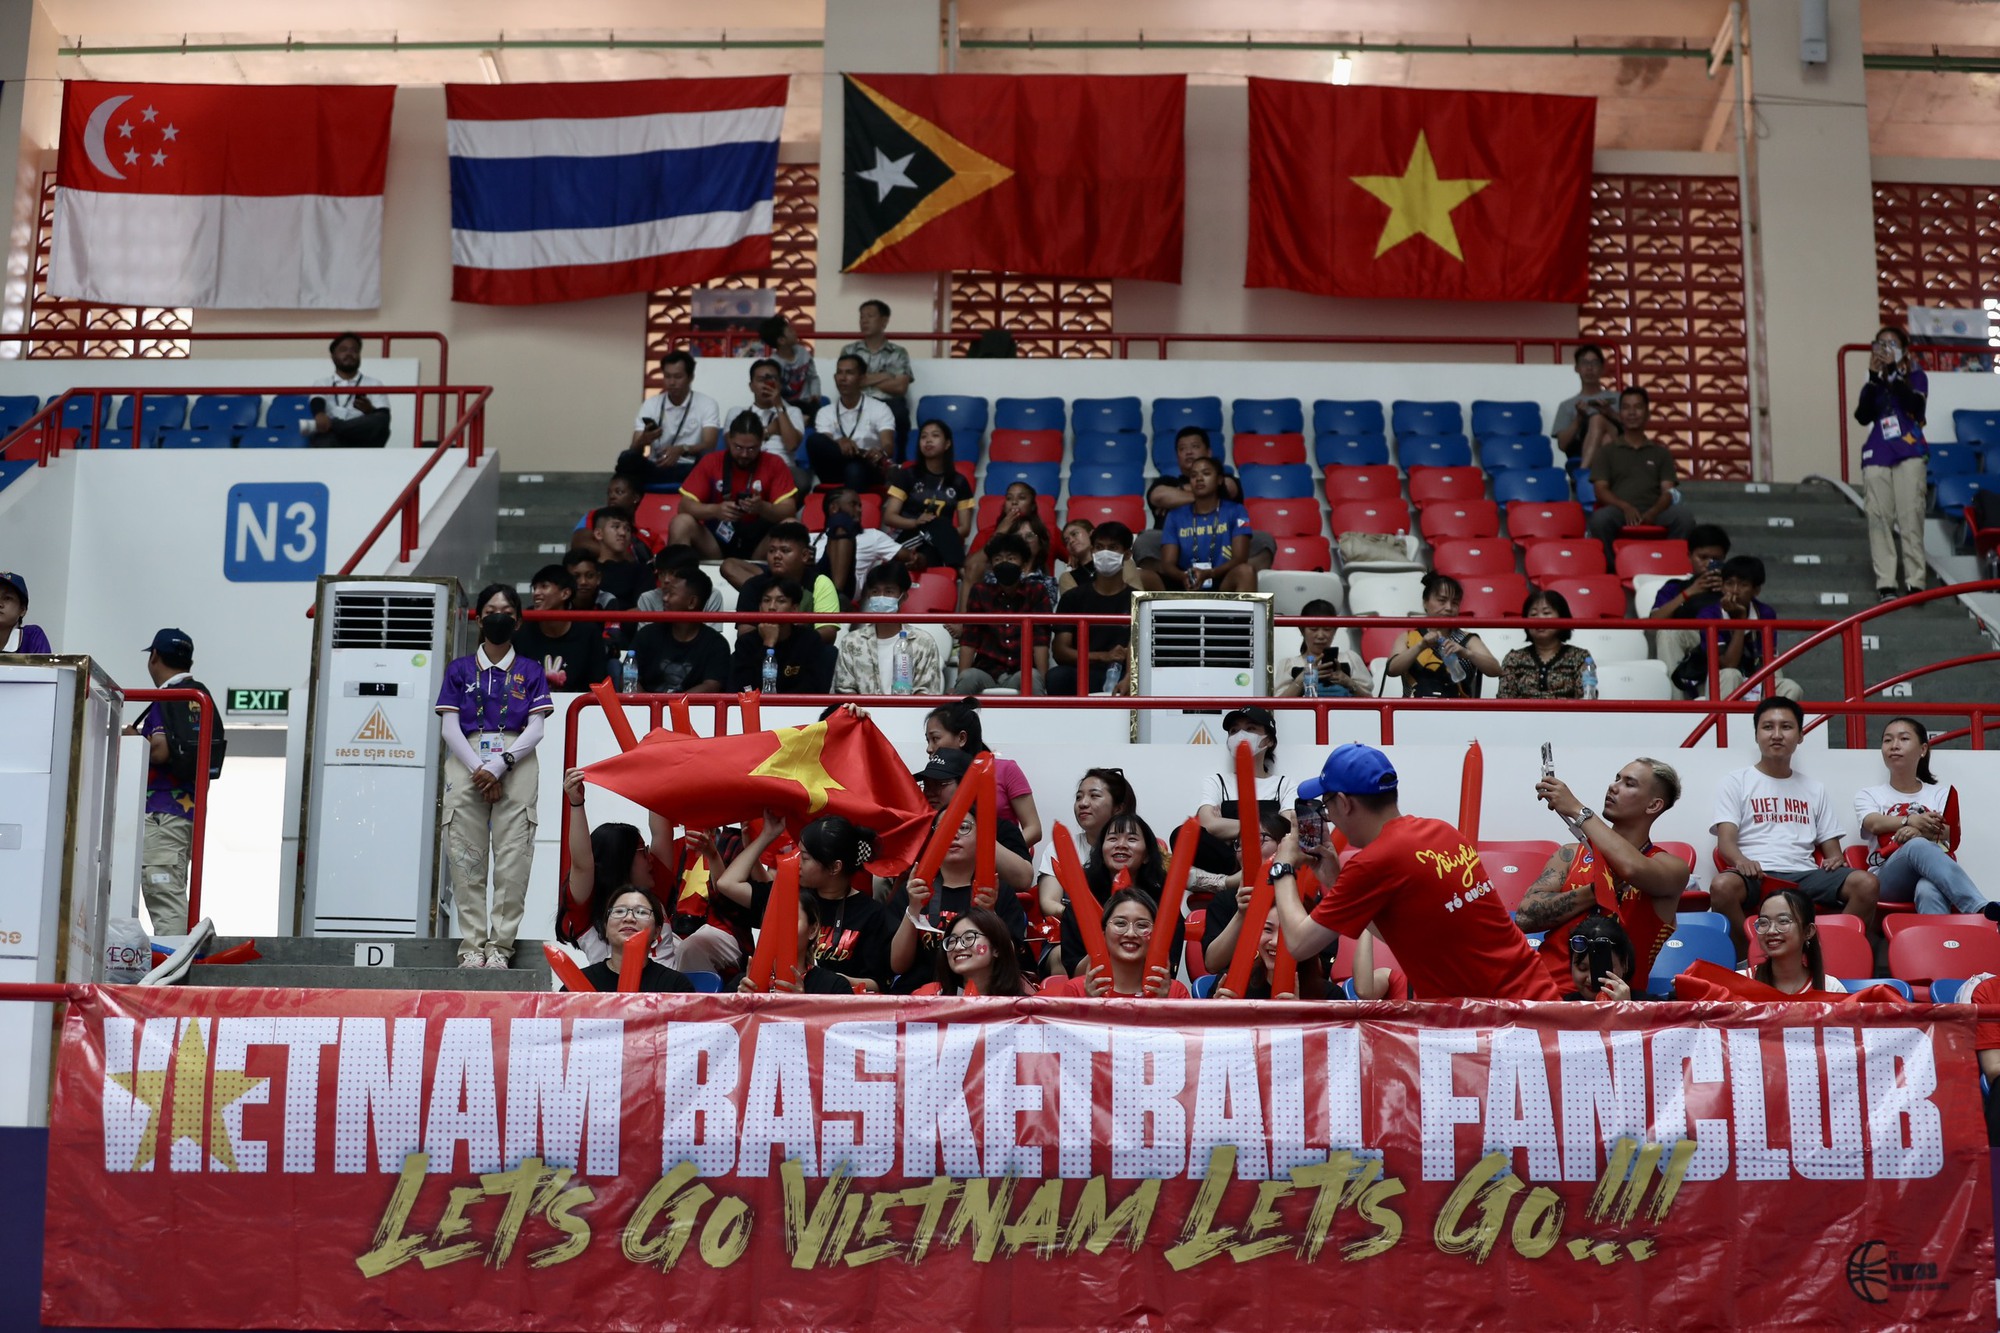 Vỡ òa cảm xúc bóng rổ nữ Việt Nam quật ngã Philippines - Ảnh 8.